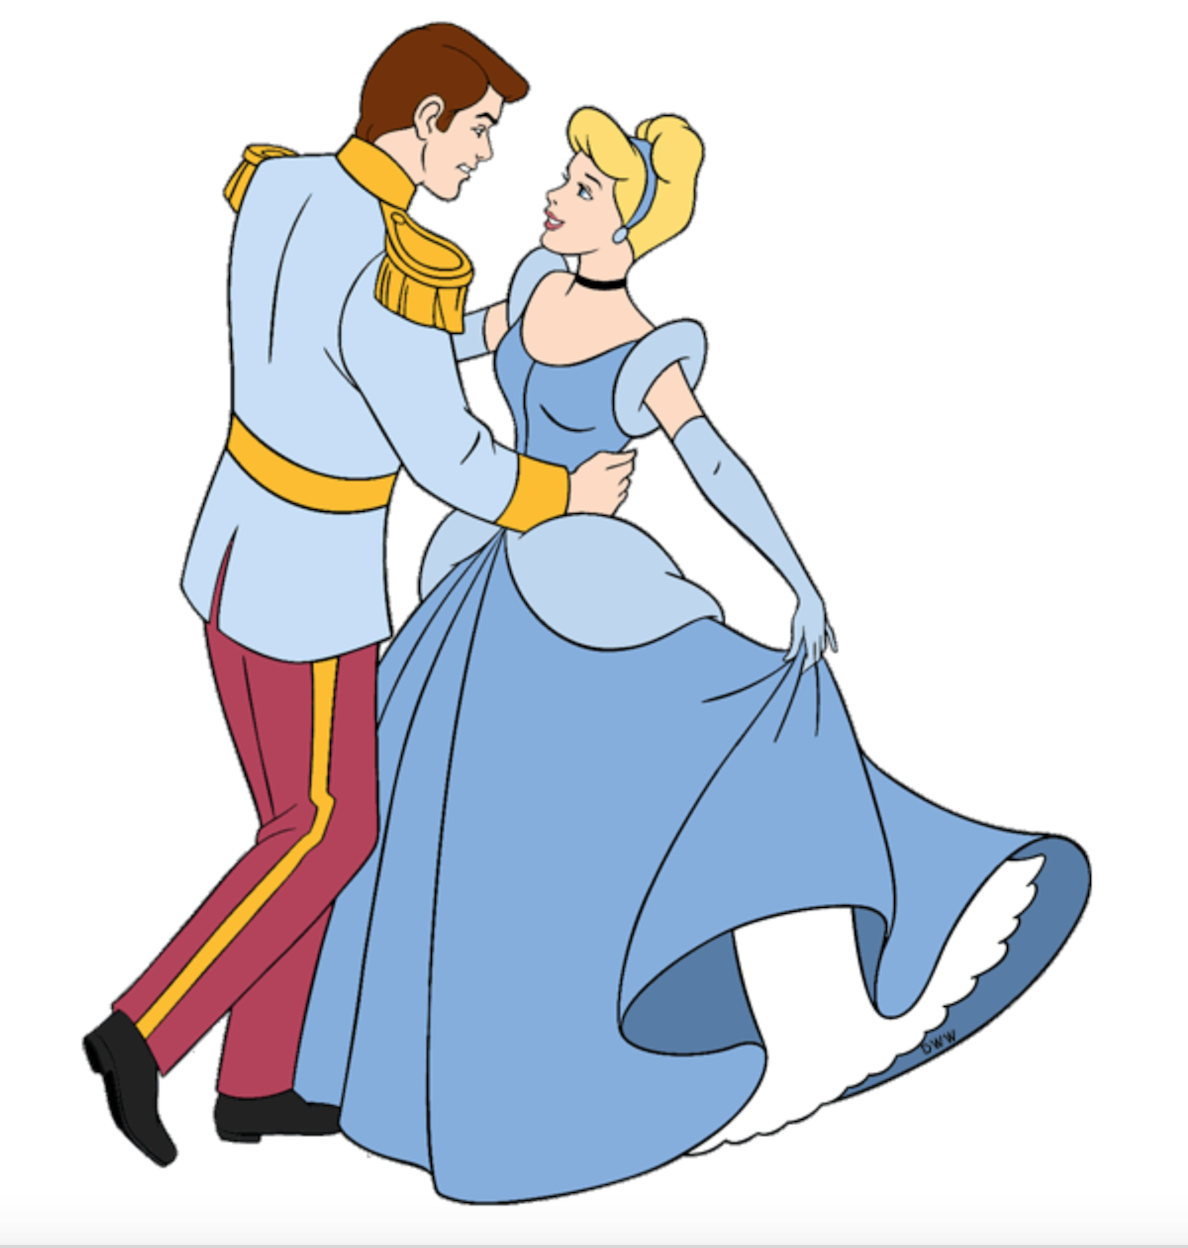 Золушка дает. Синдерелла Золушка принцесса Принс. Принц из Золушки Дисней. Принс Чарминг Золушка. Принц Чарминг Cinderella.